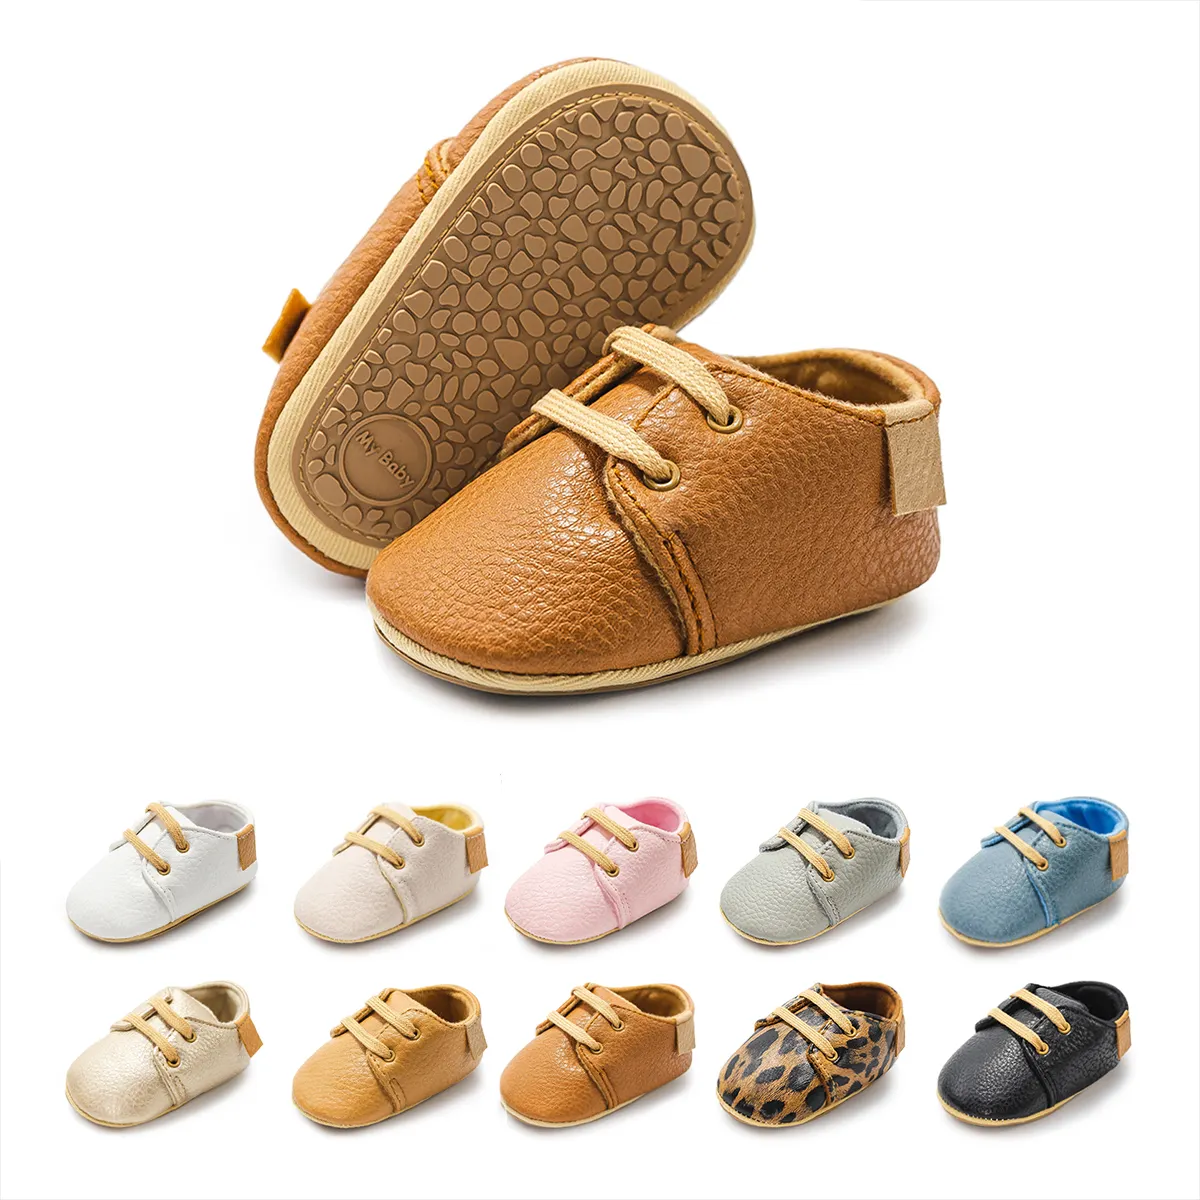 Haute qualité nouveau-né fête en plein air semelle en caoutchouc antidérapante 0-18 mois bébé chaussures habillées bébé chaussures pour bébés